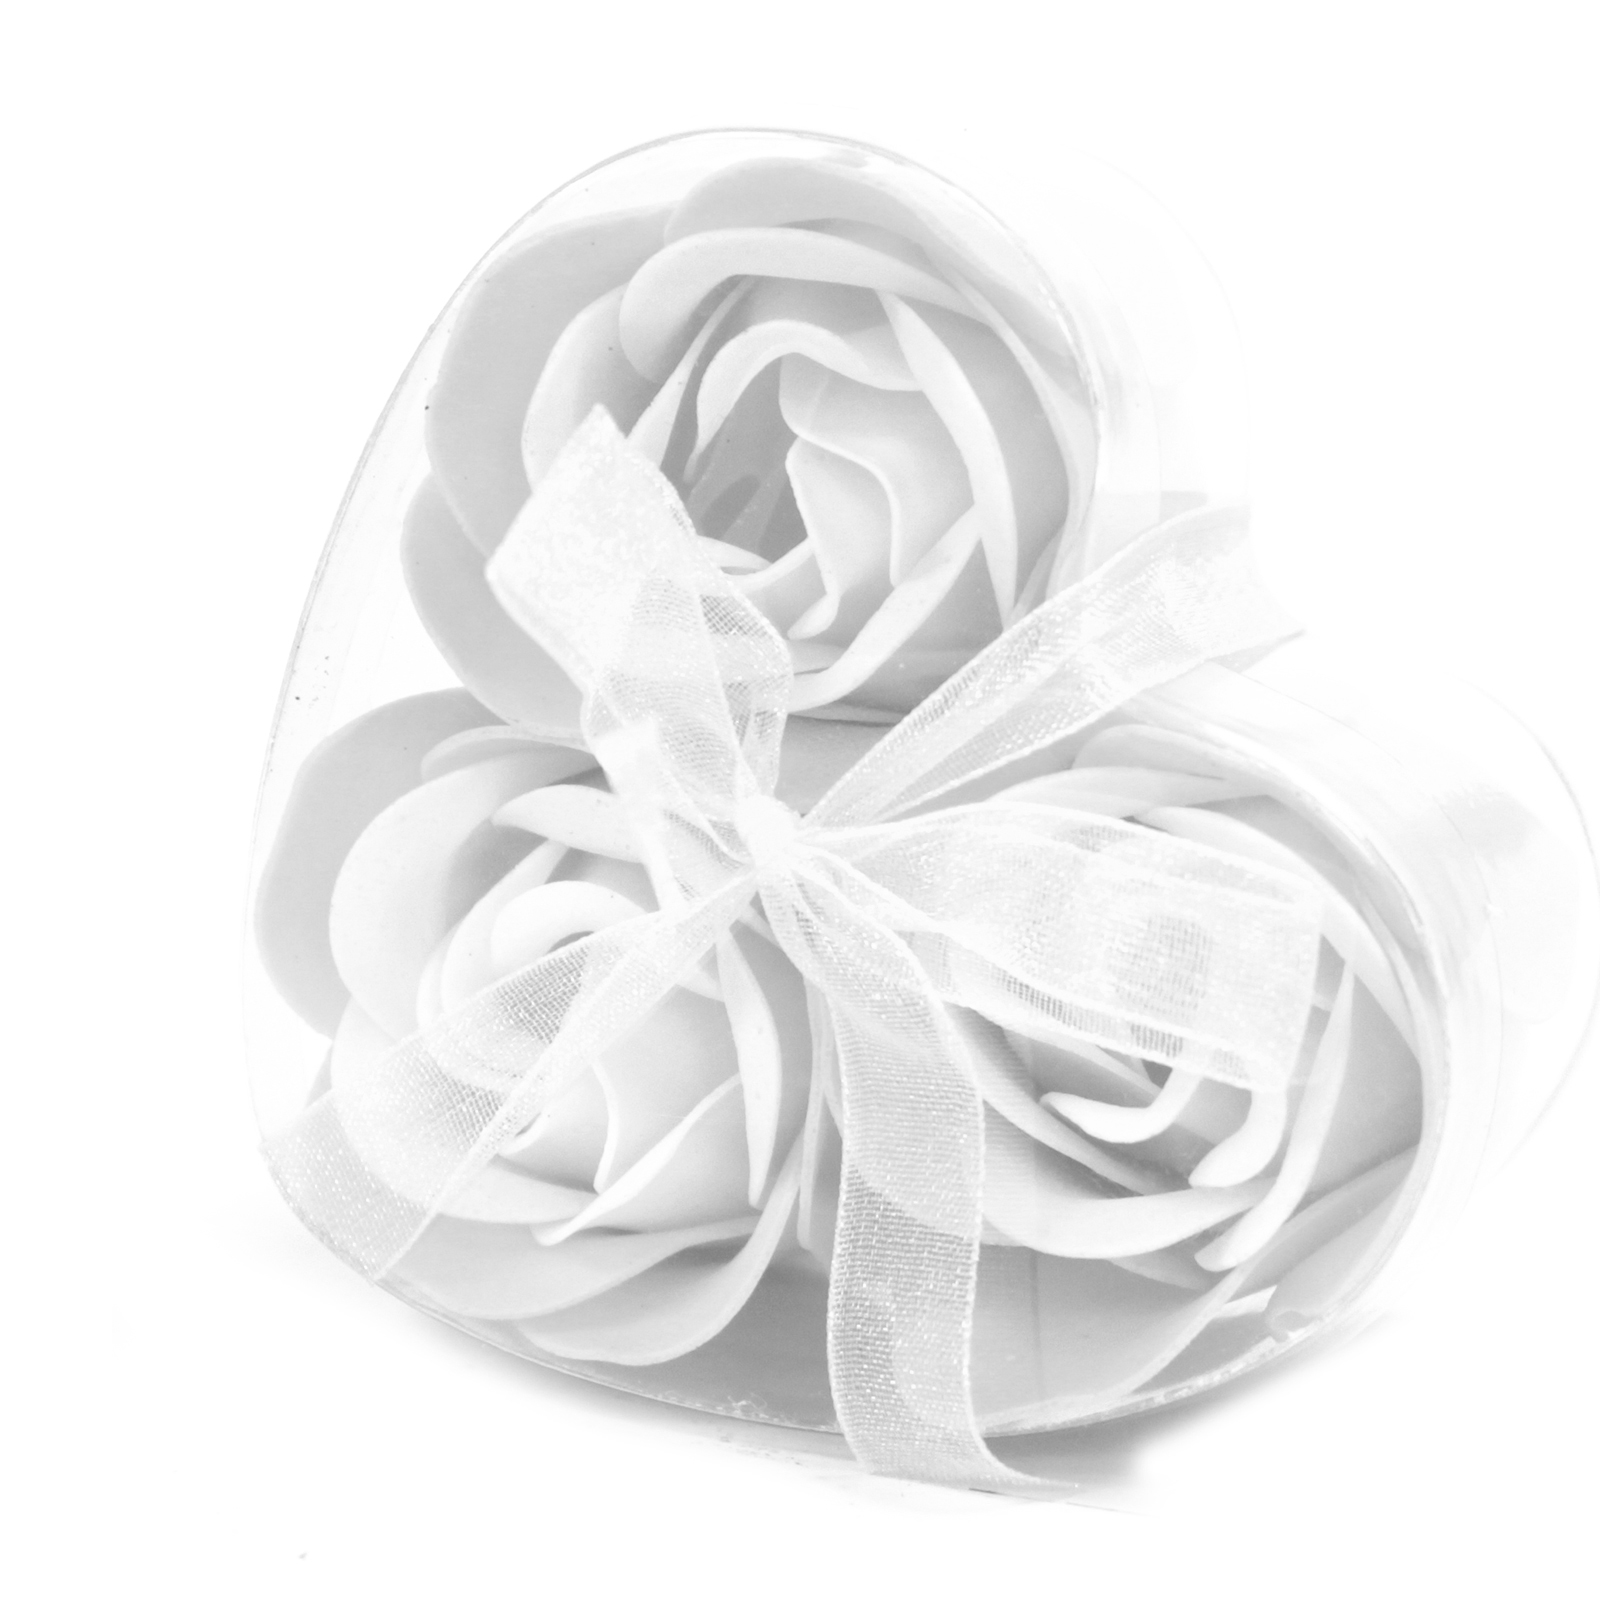 1x Set of 3 Soap Flower Heart Box - White Roses